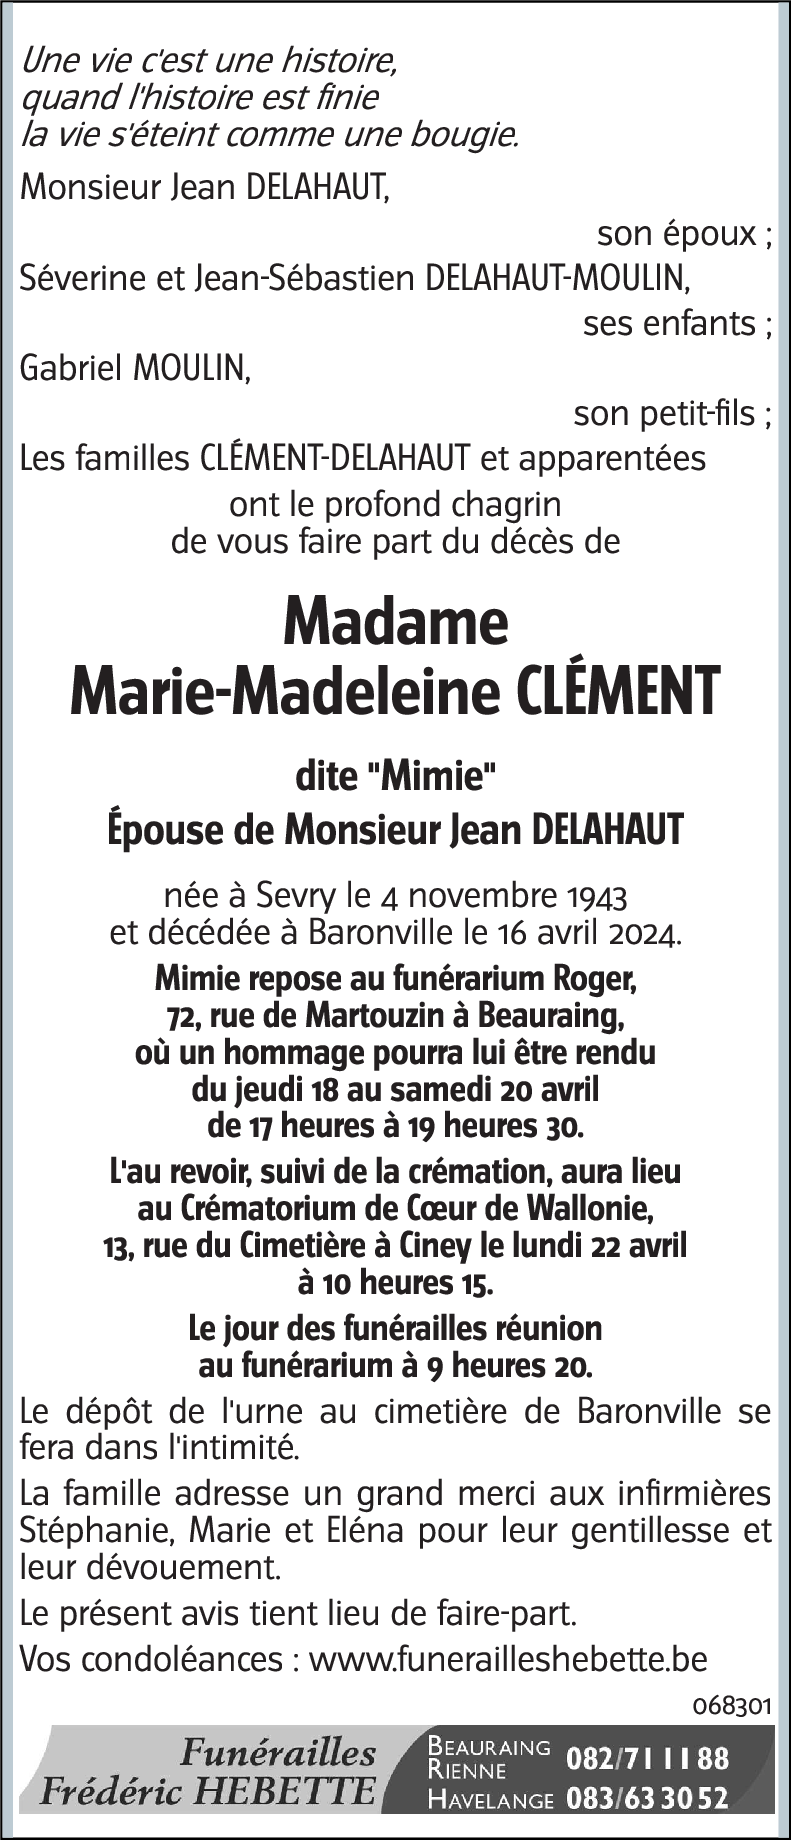 Marie-Madeleine CLEMENT